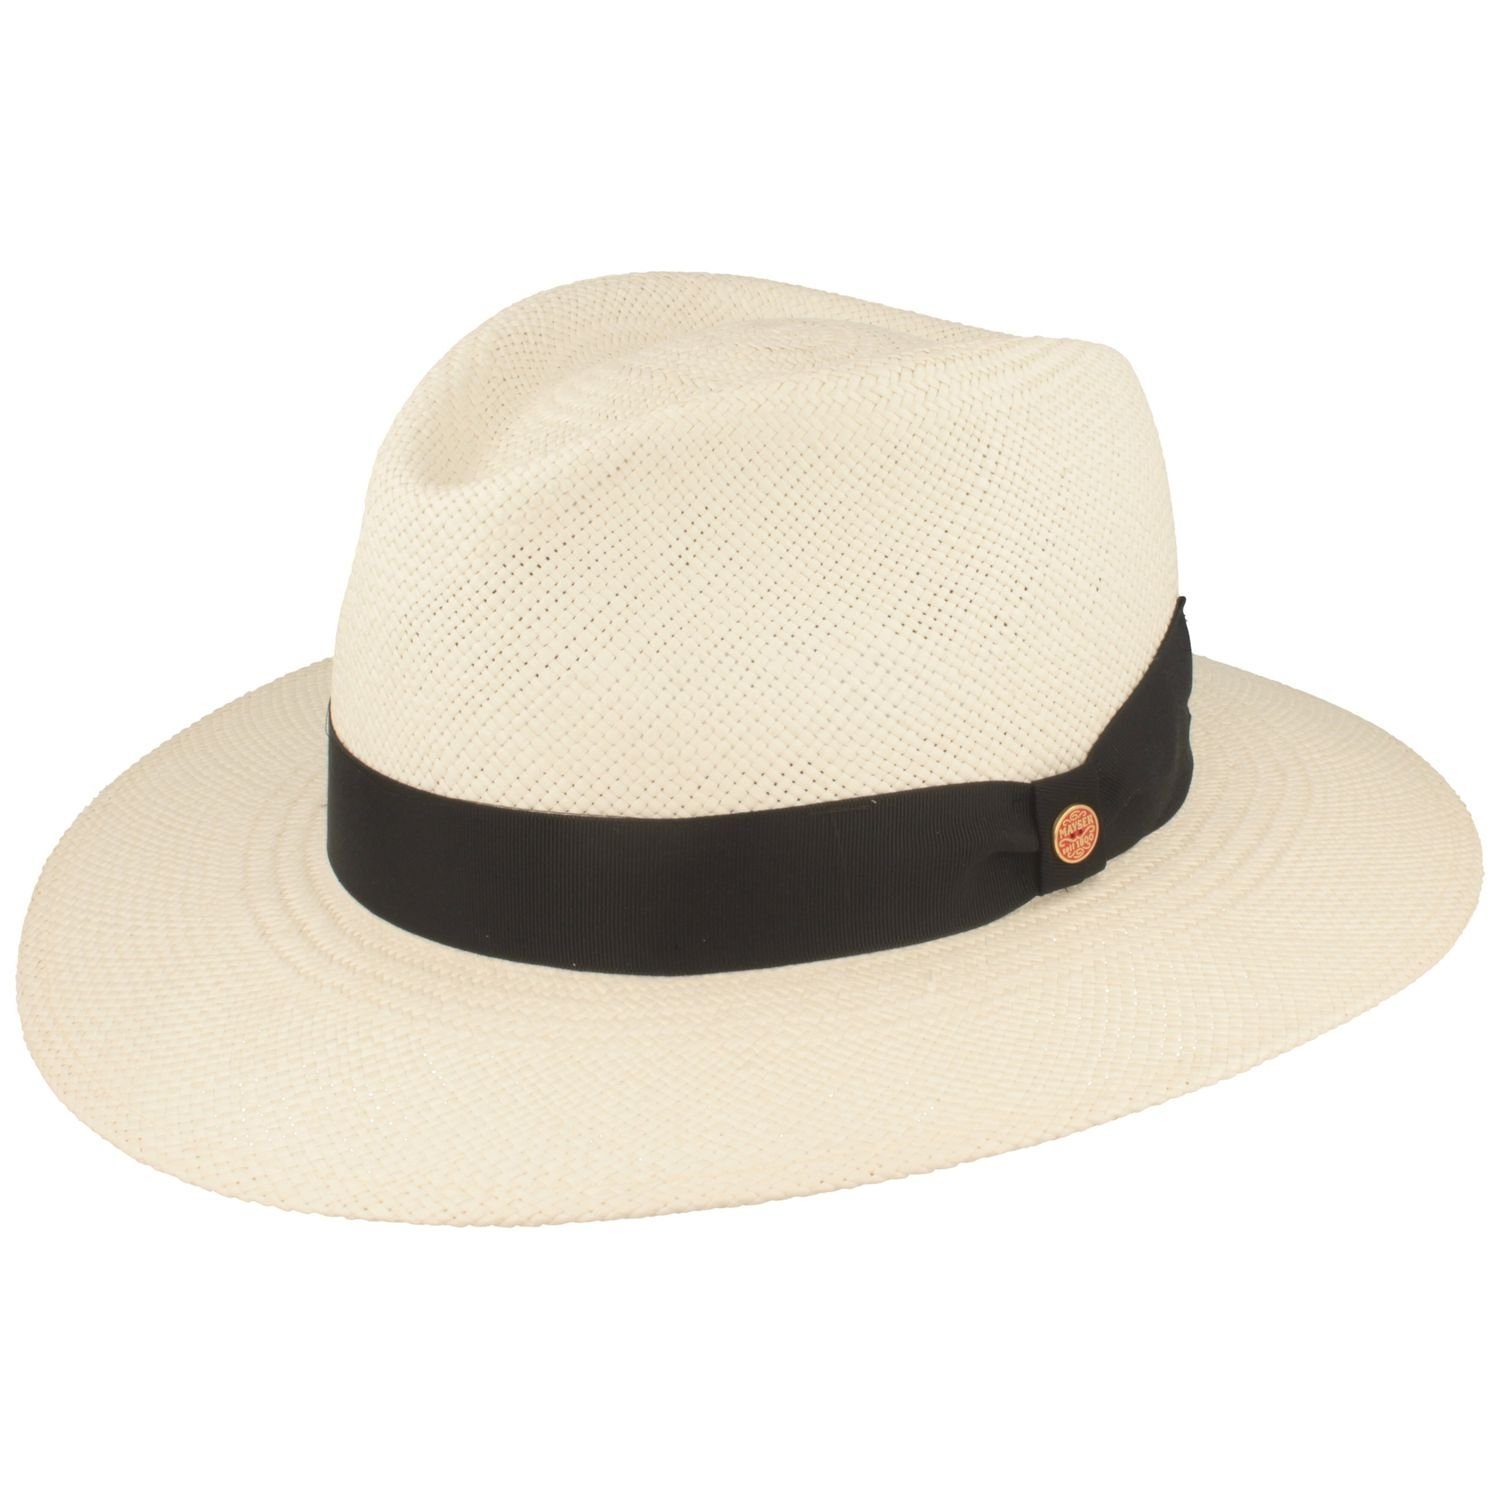 Mayser Strohhut wasserabweisender Panama Hut Tarbes mit UV-Schutz 60 bzw. 80 0025 bleached